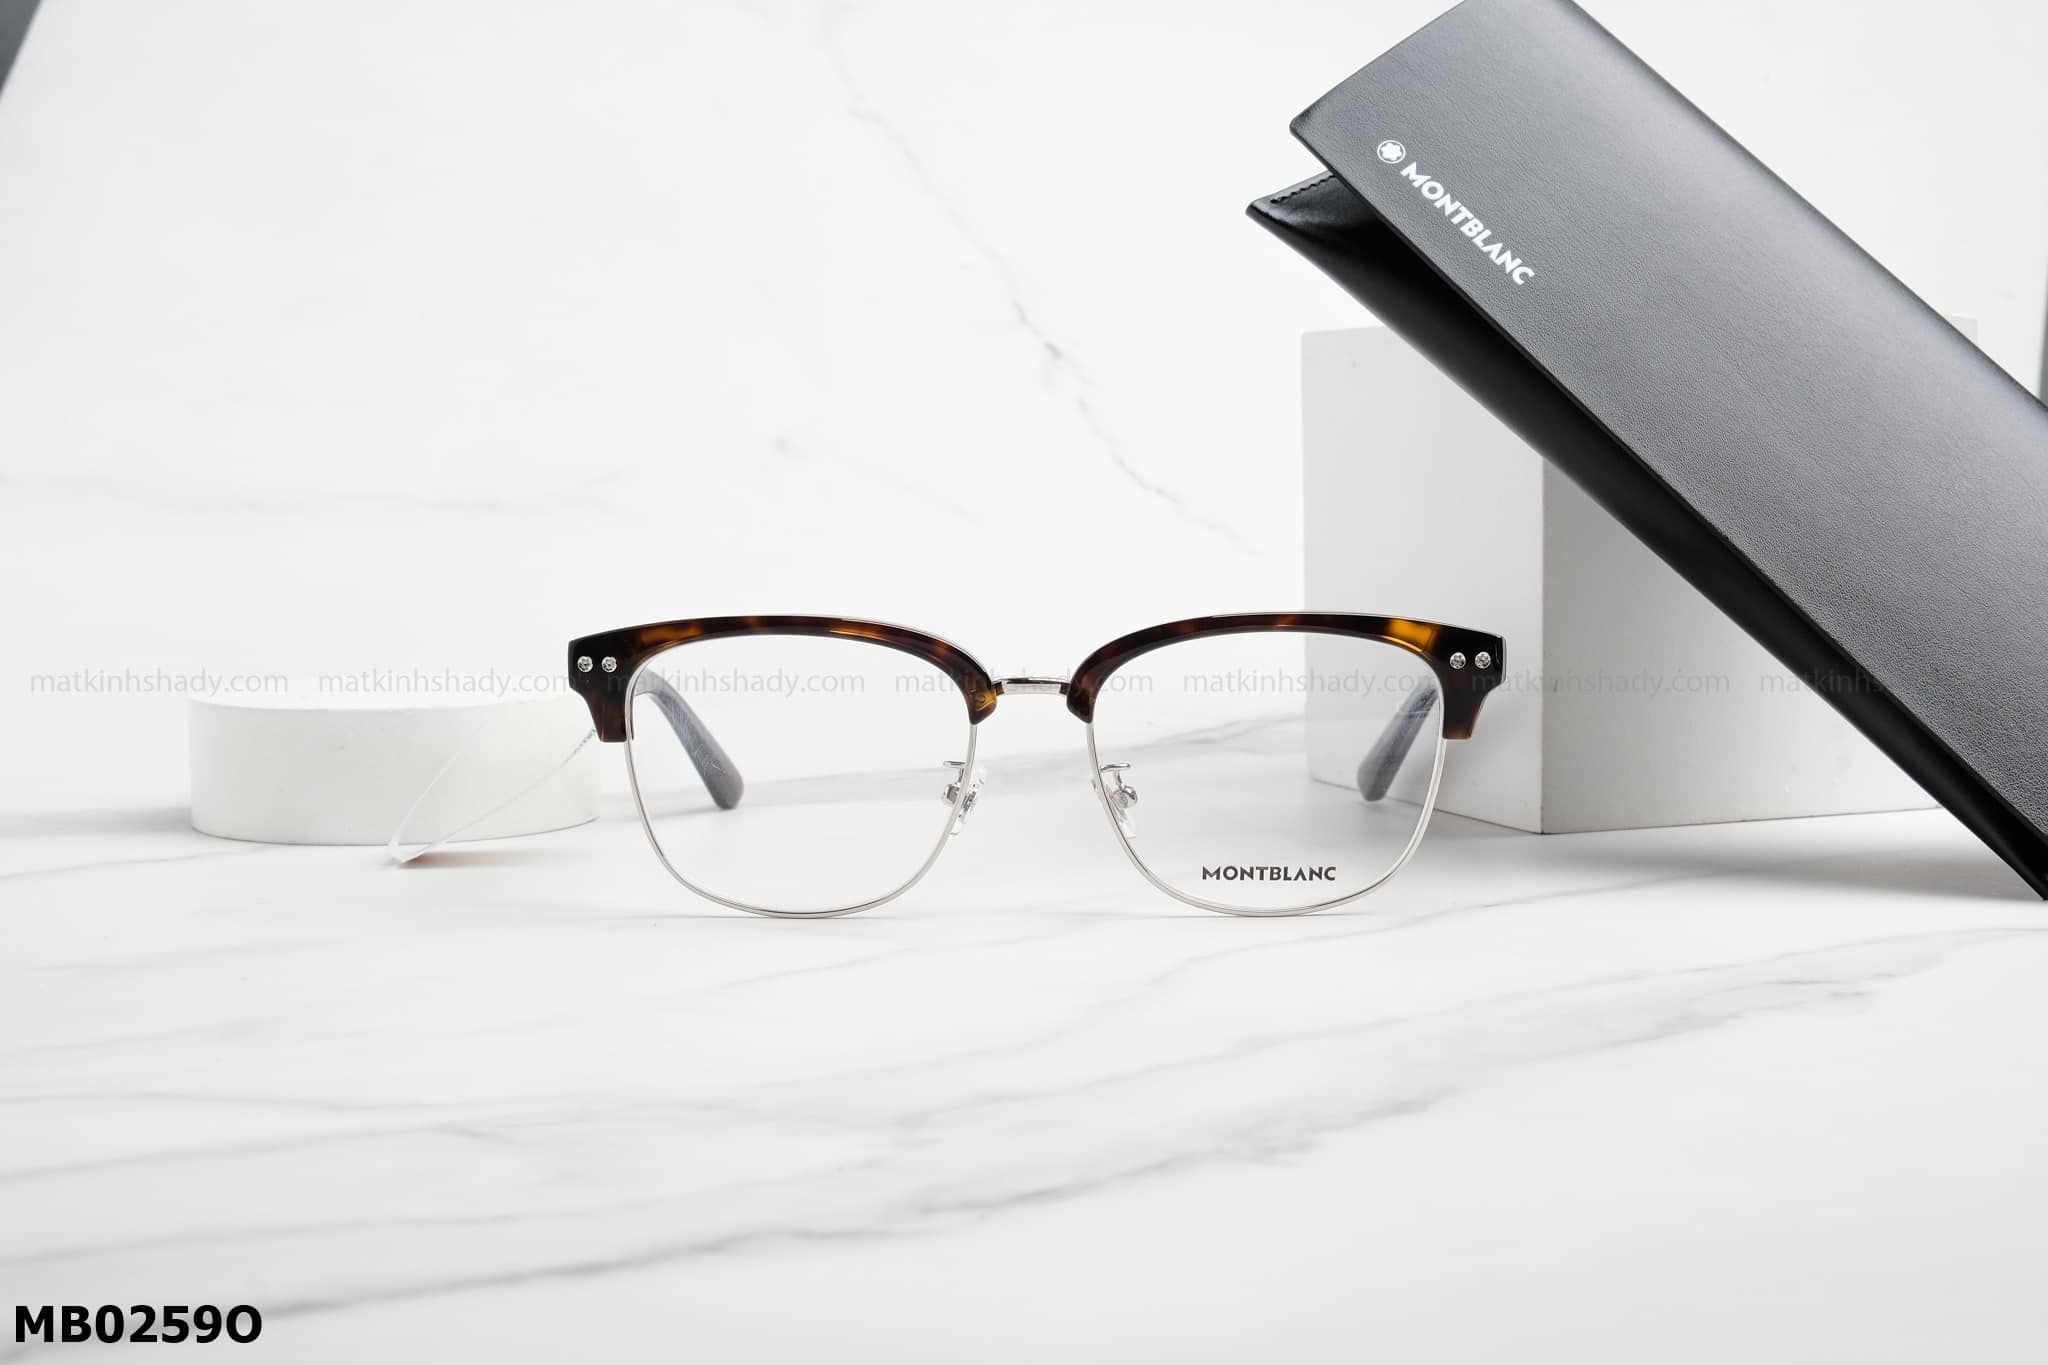  Montblanc Eyewear - Glasses - MB0259O 